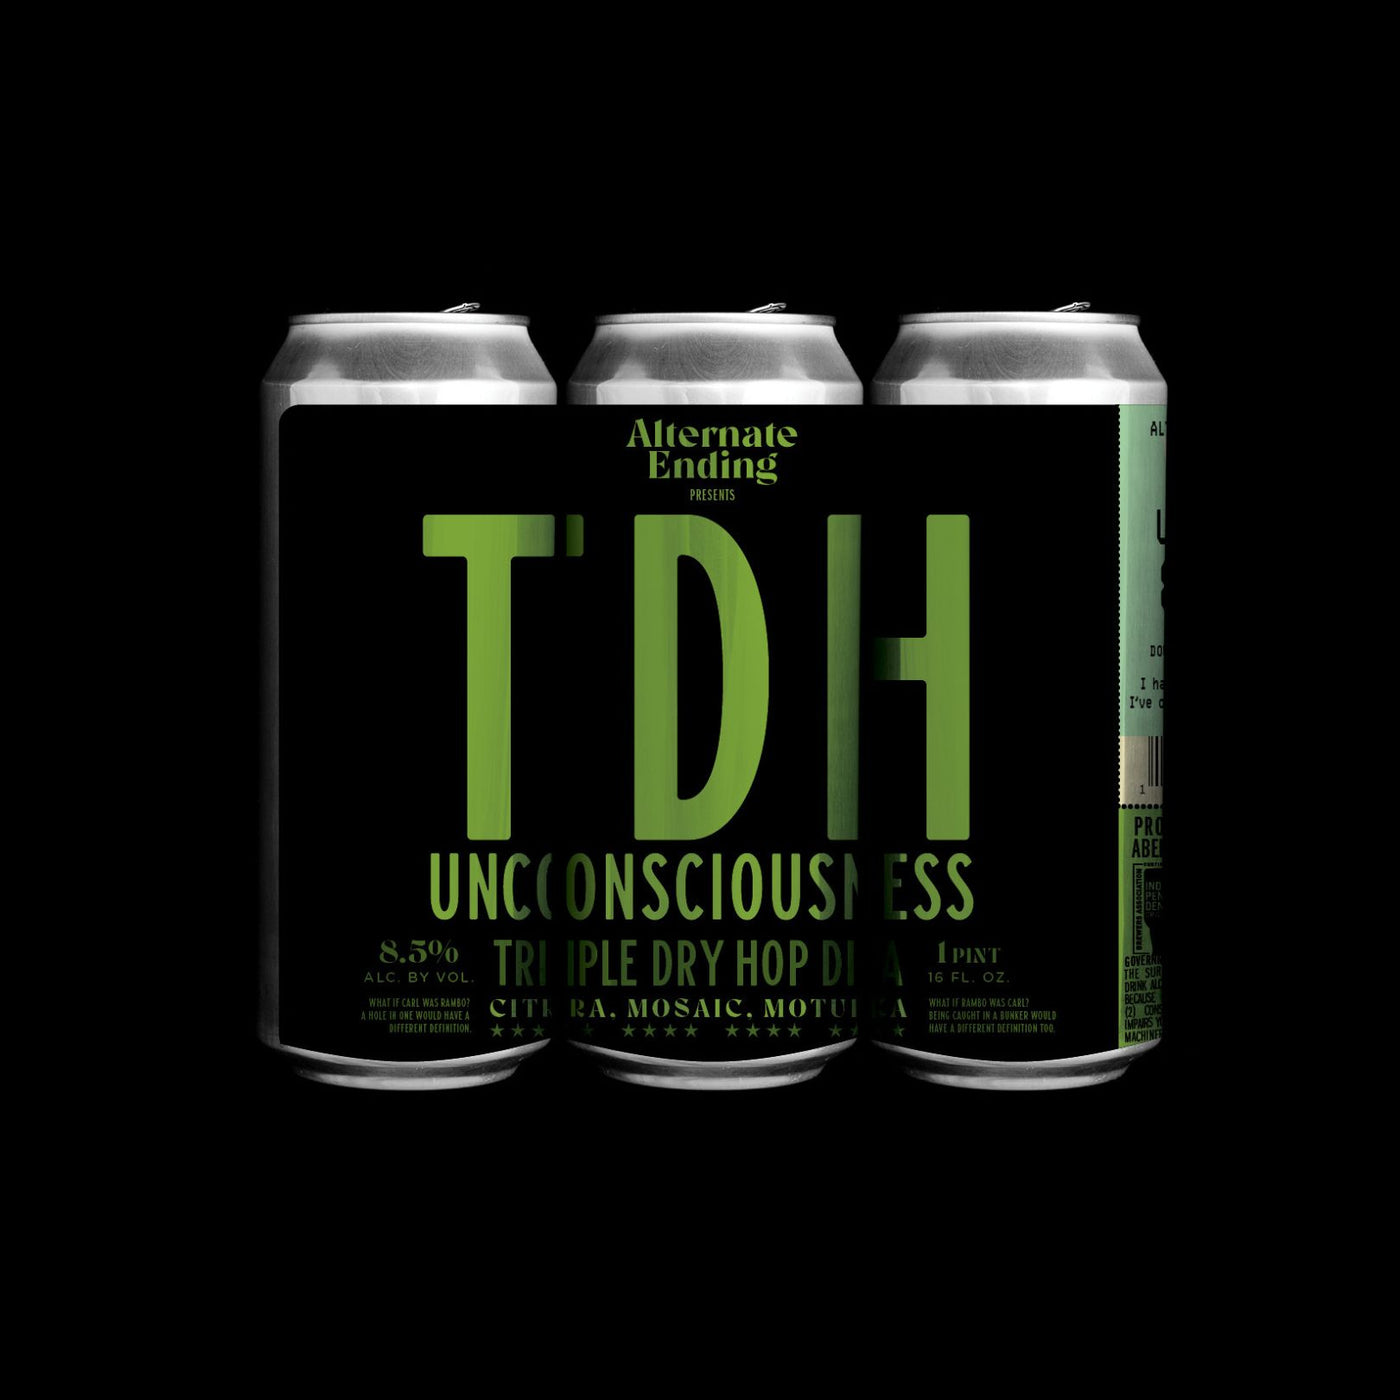 TDH Unconsciousness